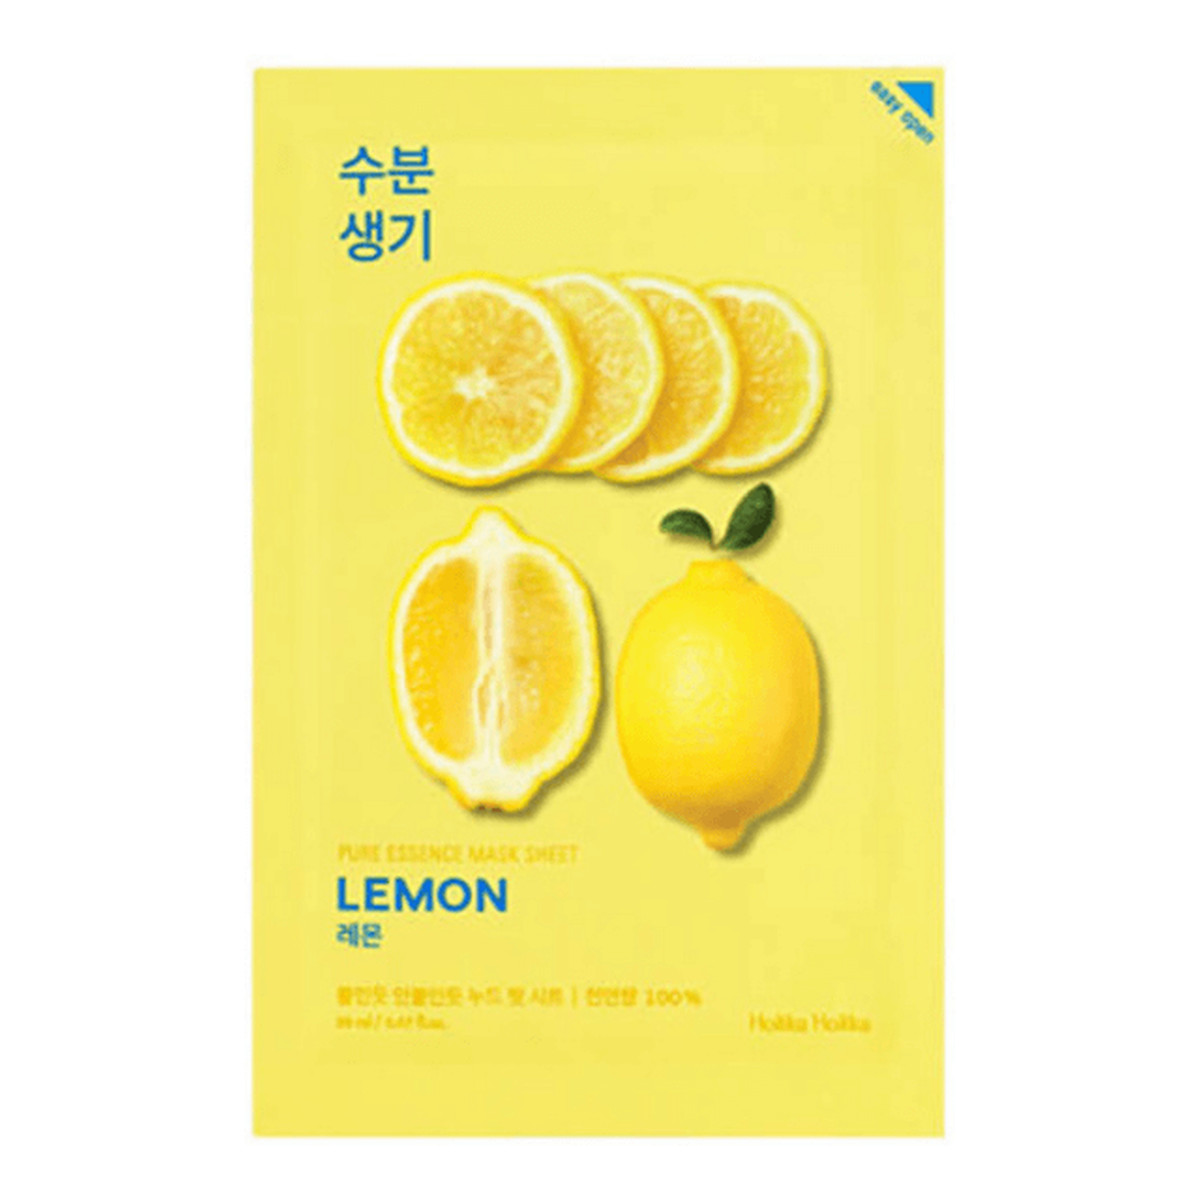 Holika Holika Pure Essence Mask Sheet Lemon maseczka z ekstraktem z cytryny oczyszczająca 1 sztuka 20ml